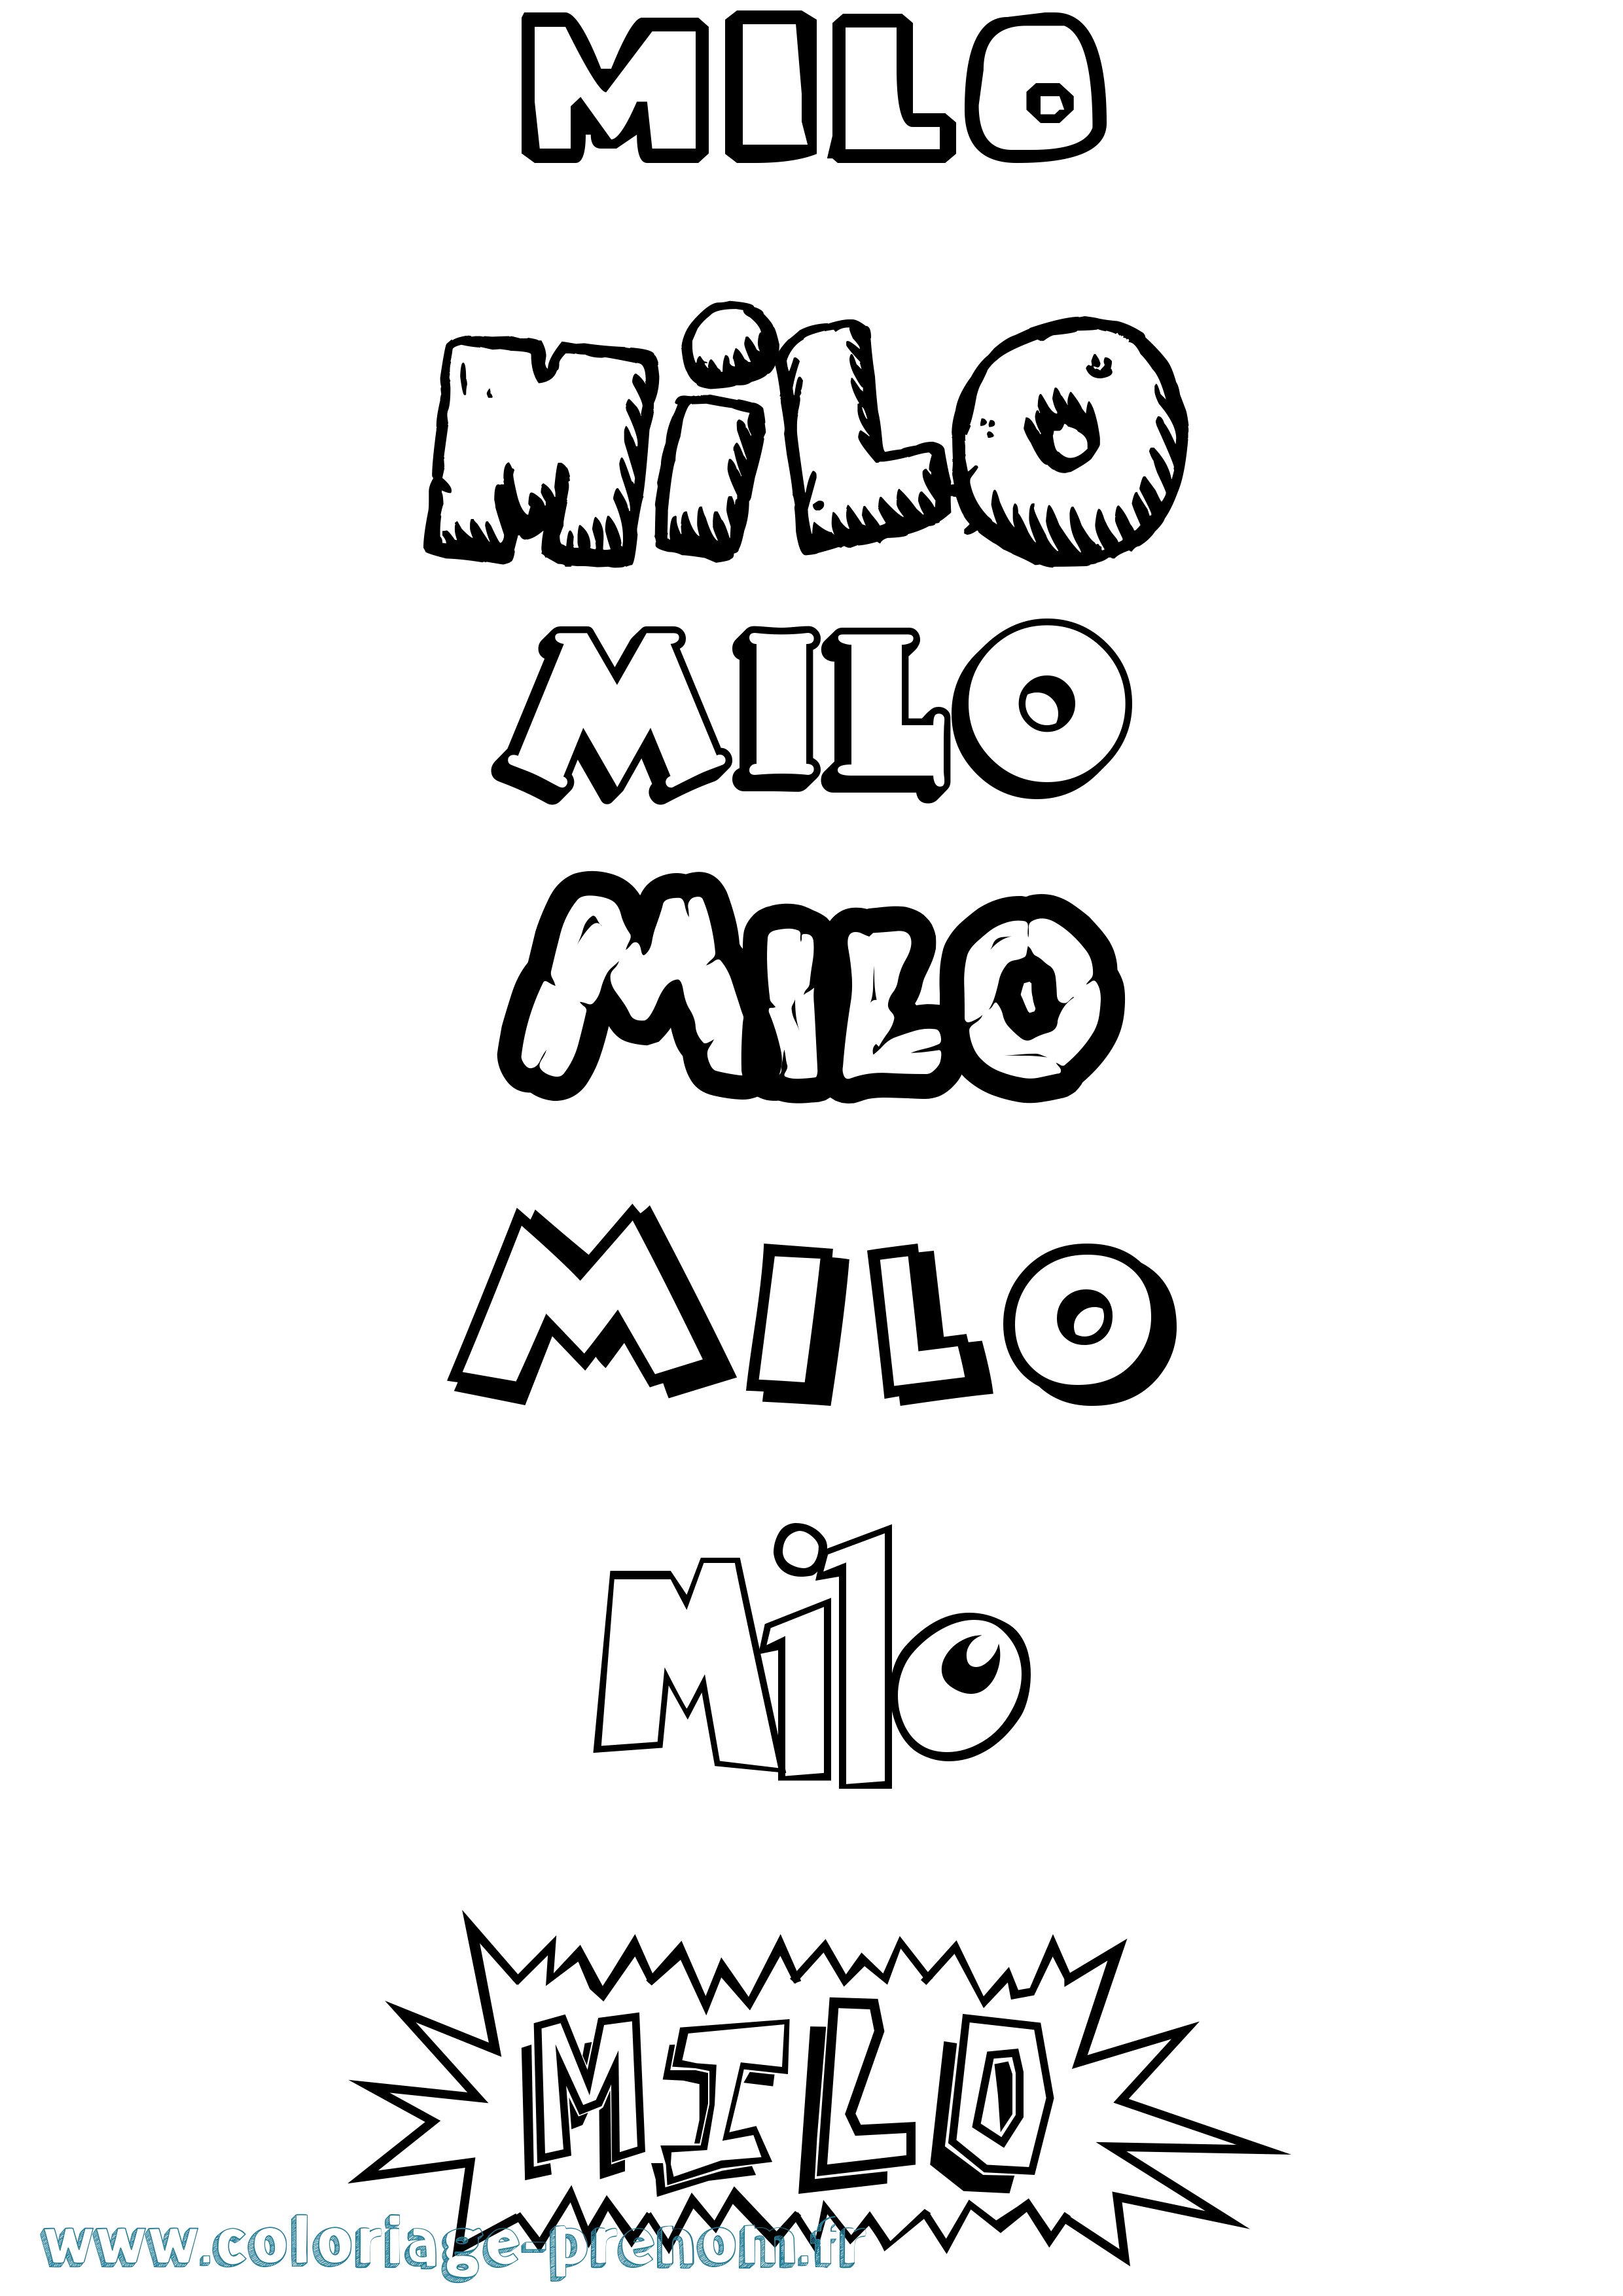 Coloriage prénom Milo